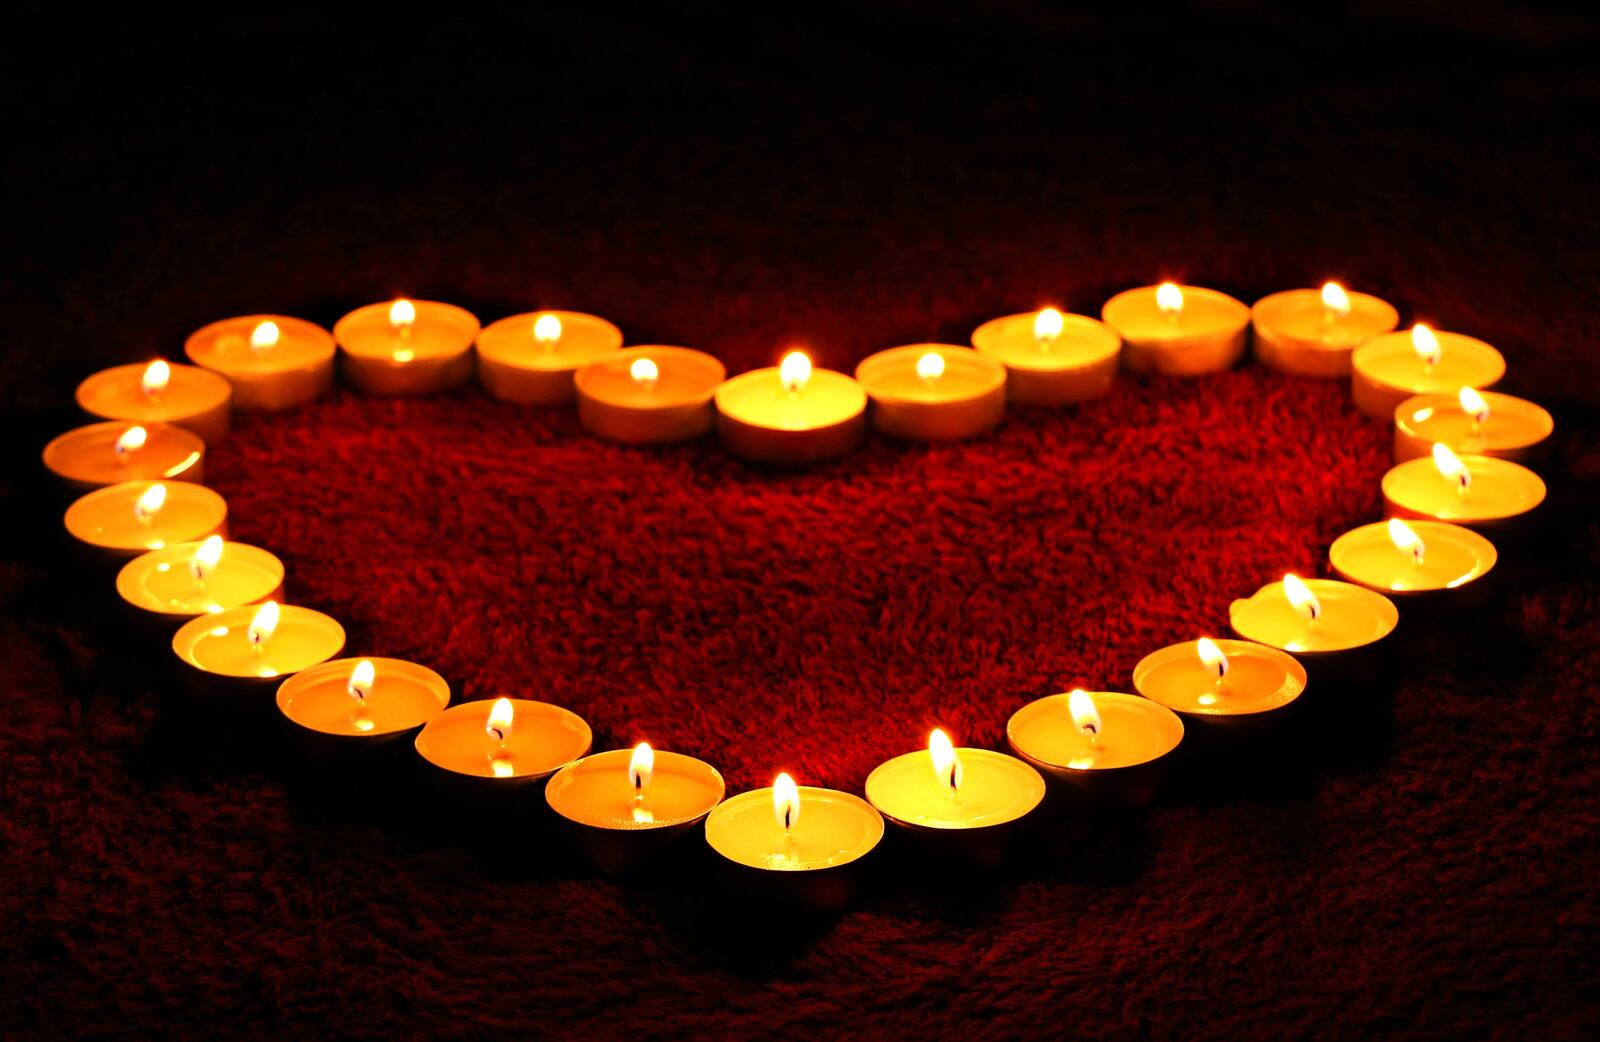 Бесплатное фото Светящееся сердце из маленьких свечек